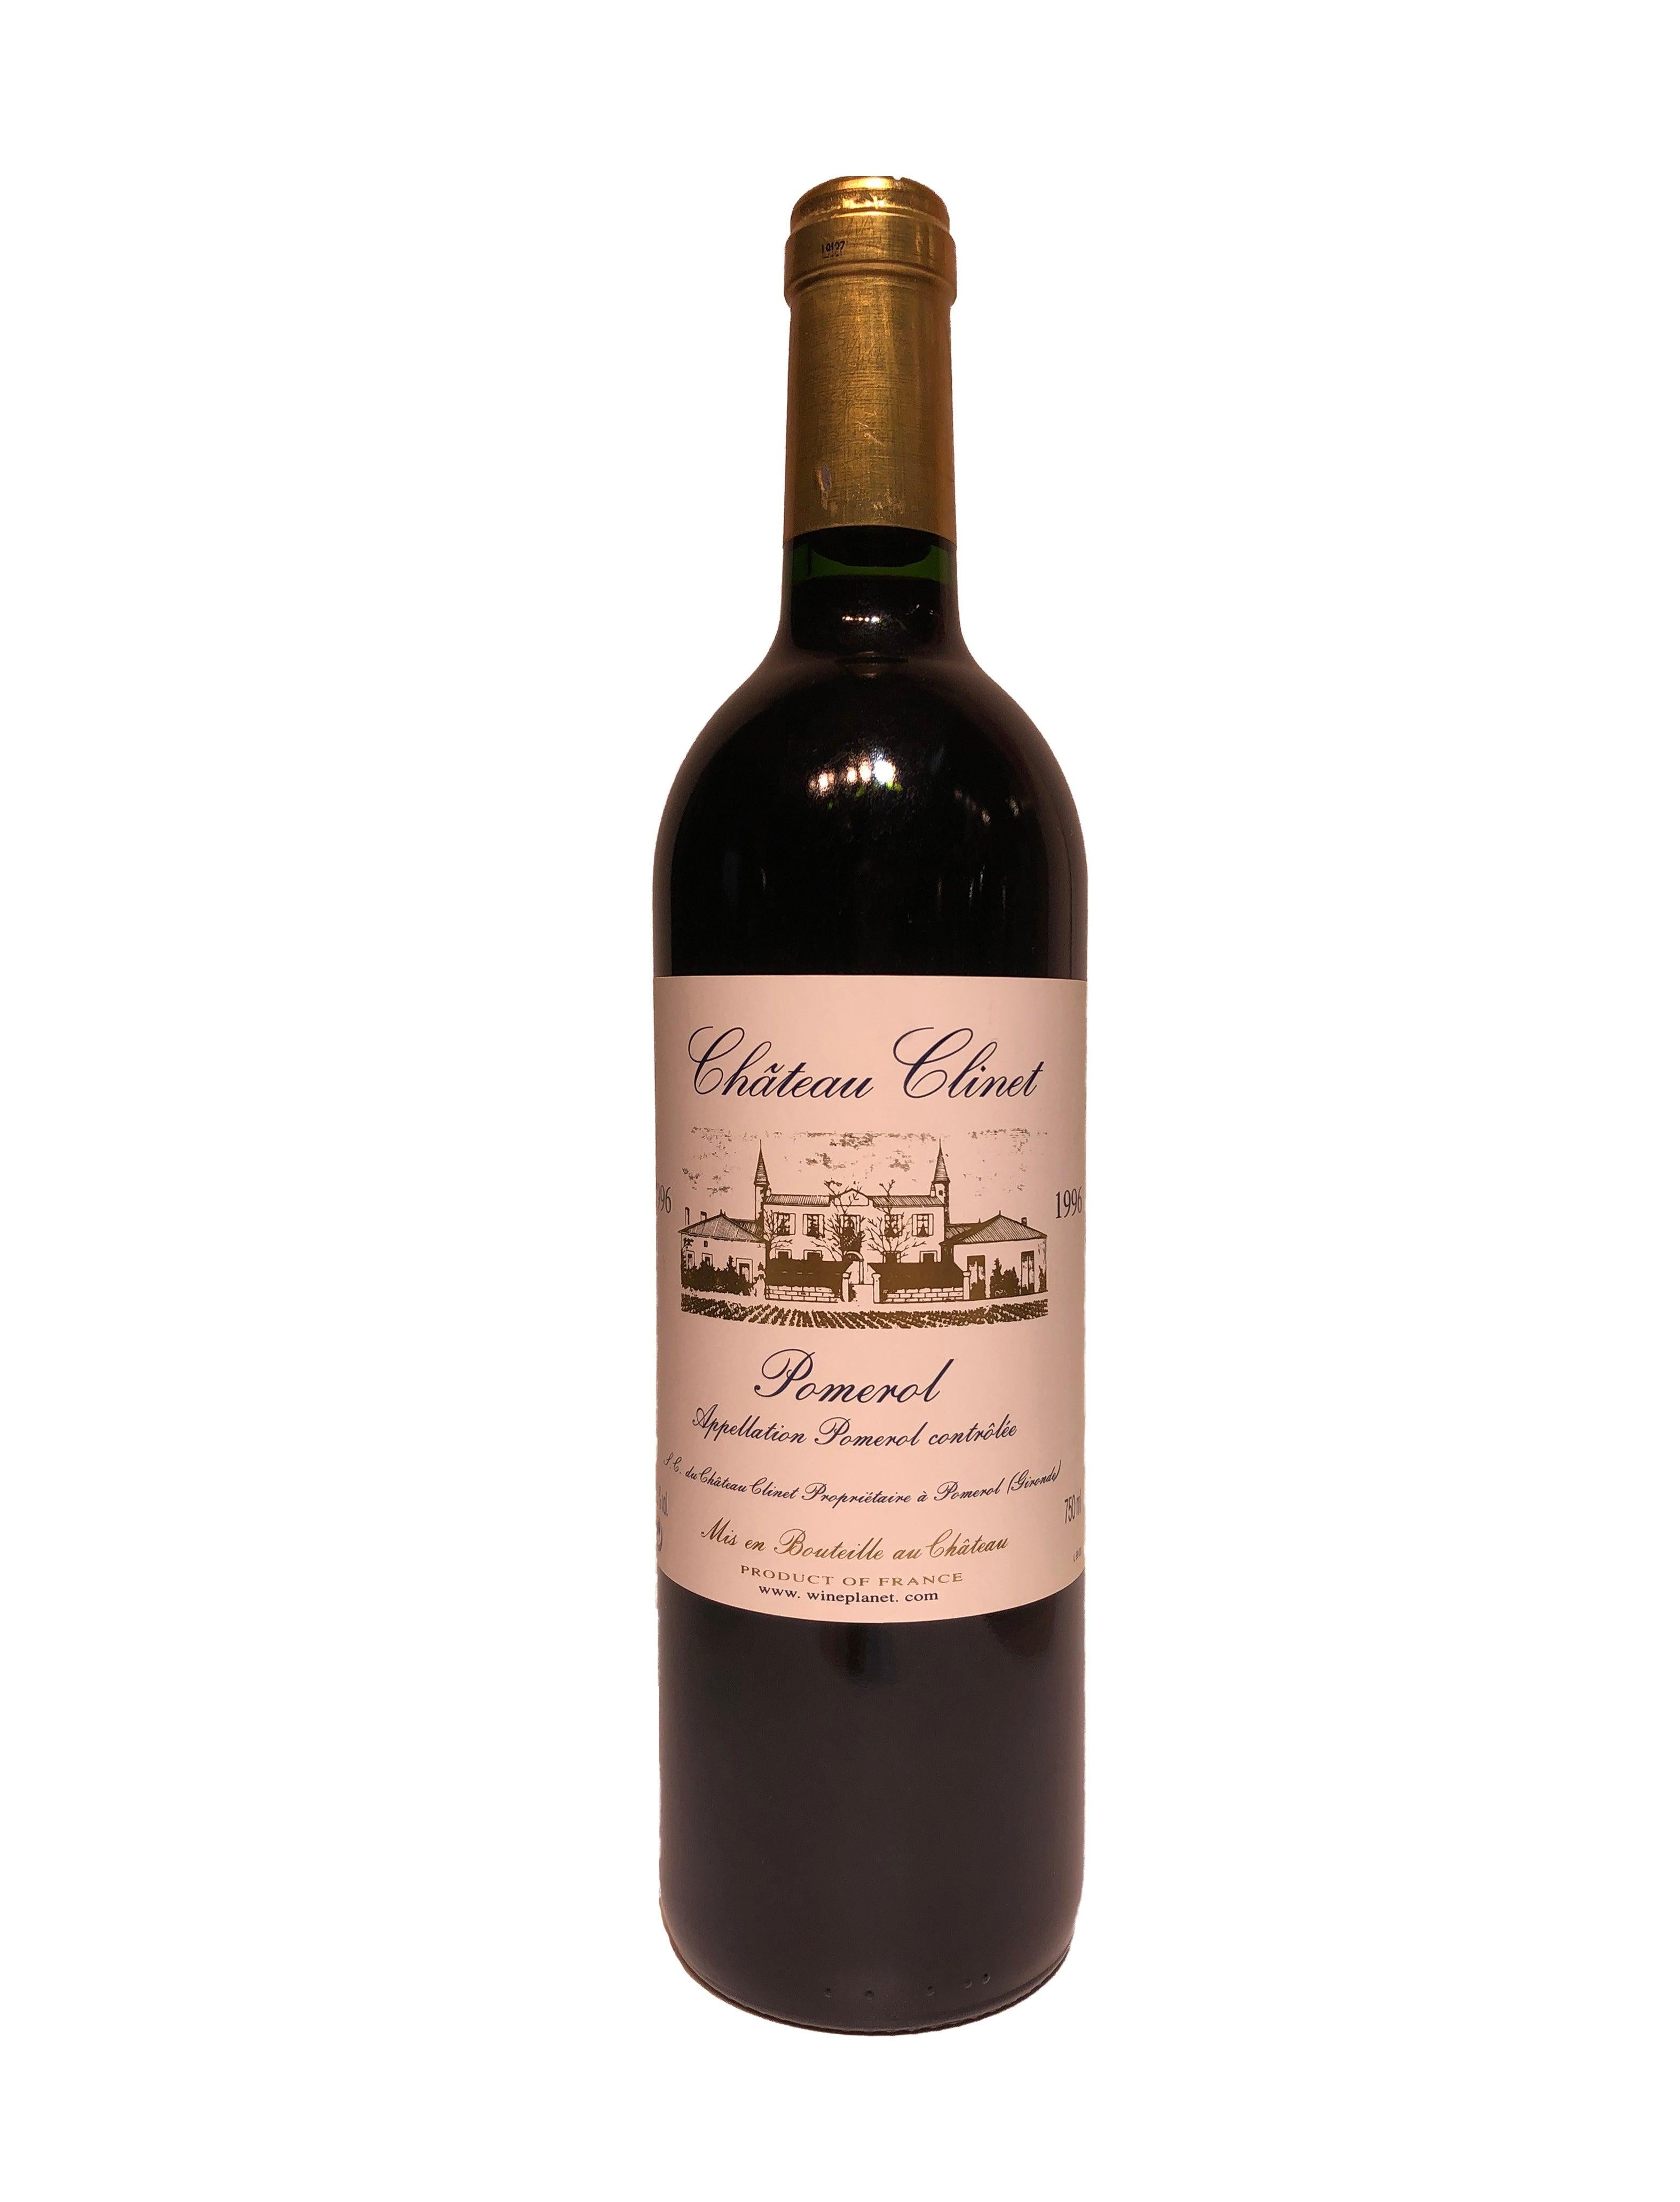 Château Clinet 1996 (RP91) - Double S Wine 